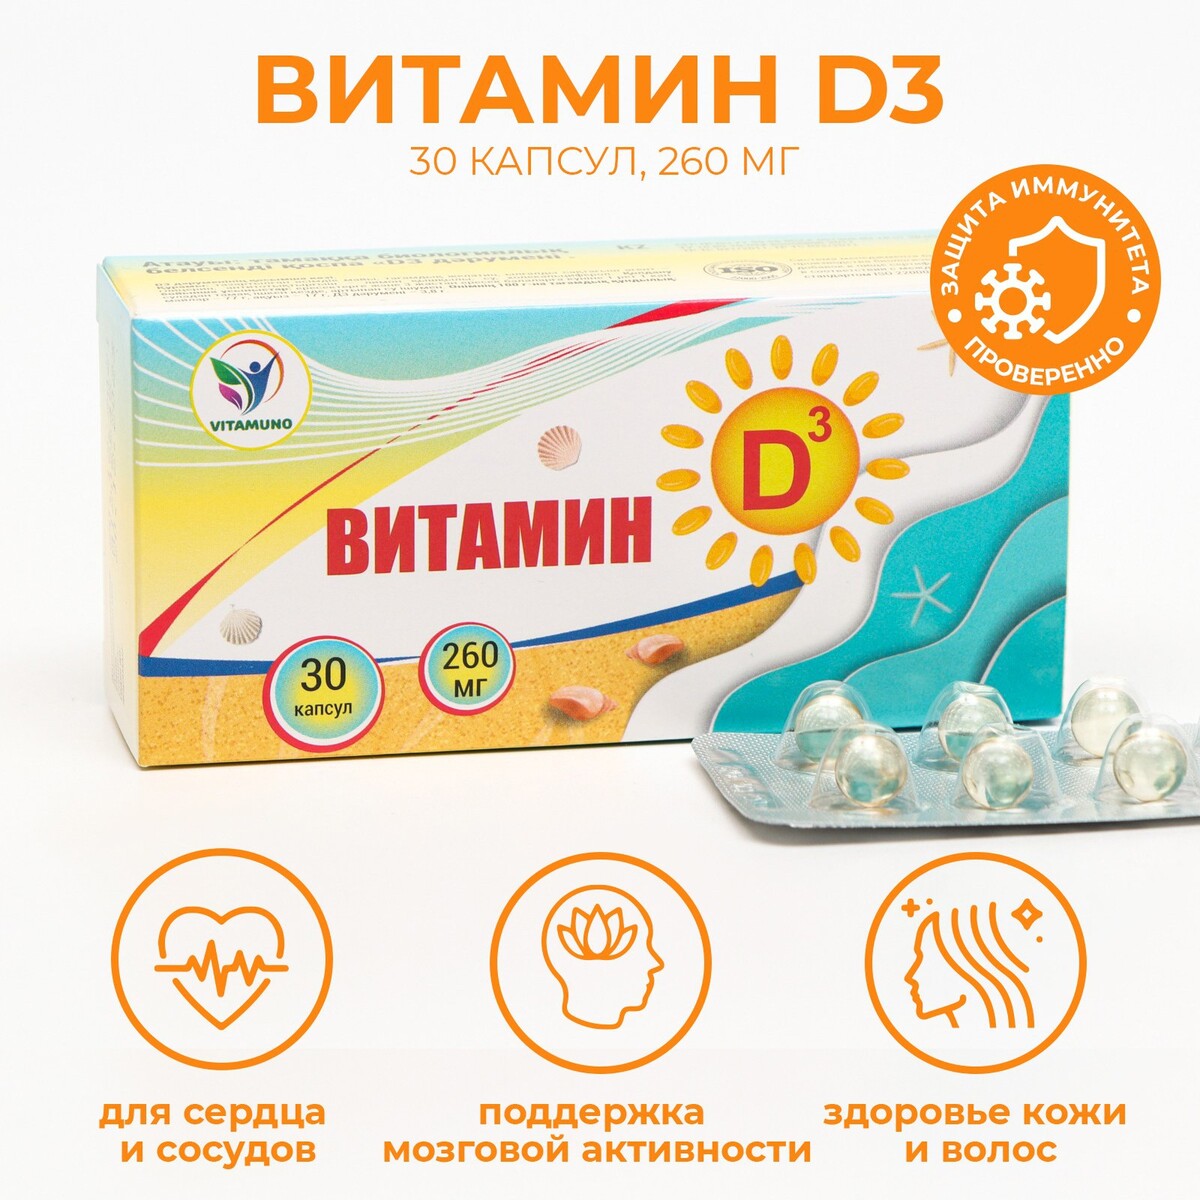 Витамин d3 vitamuno для взрослых и детей, 30 шт. по 260 мг эхо северных скал